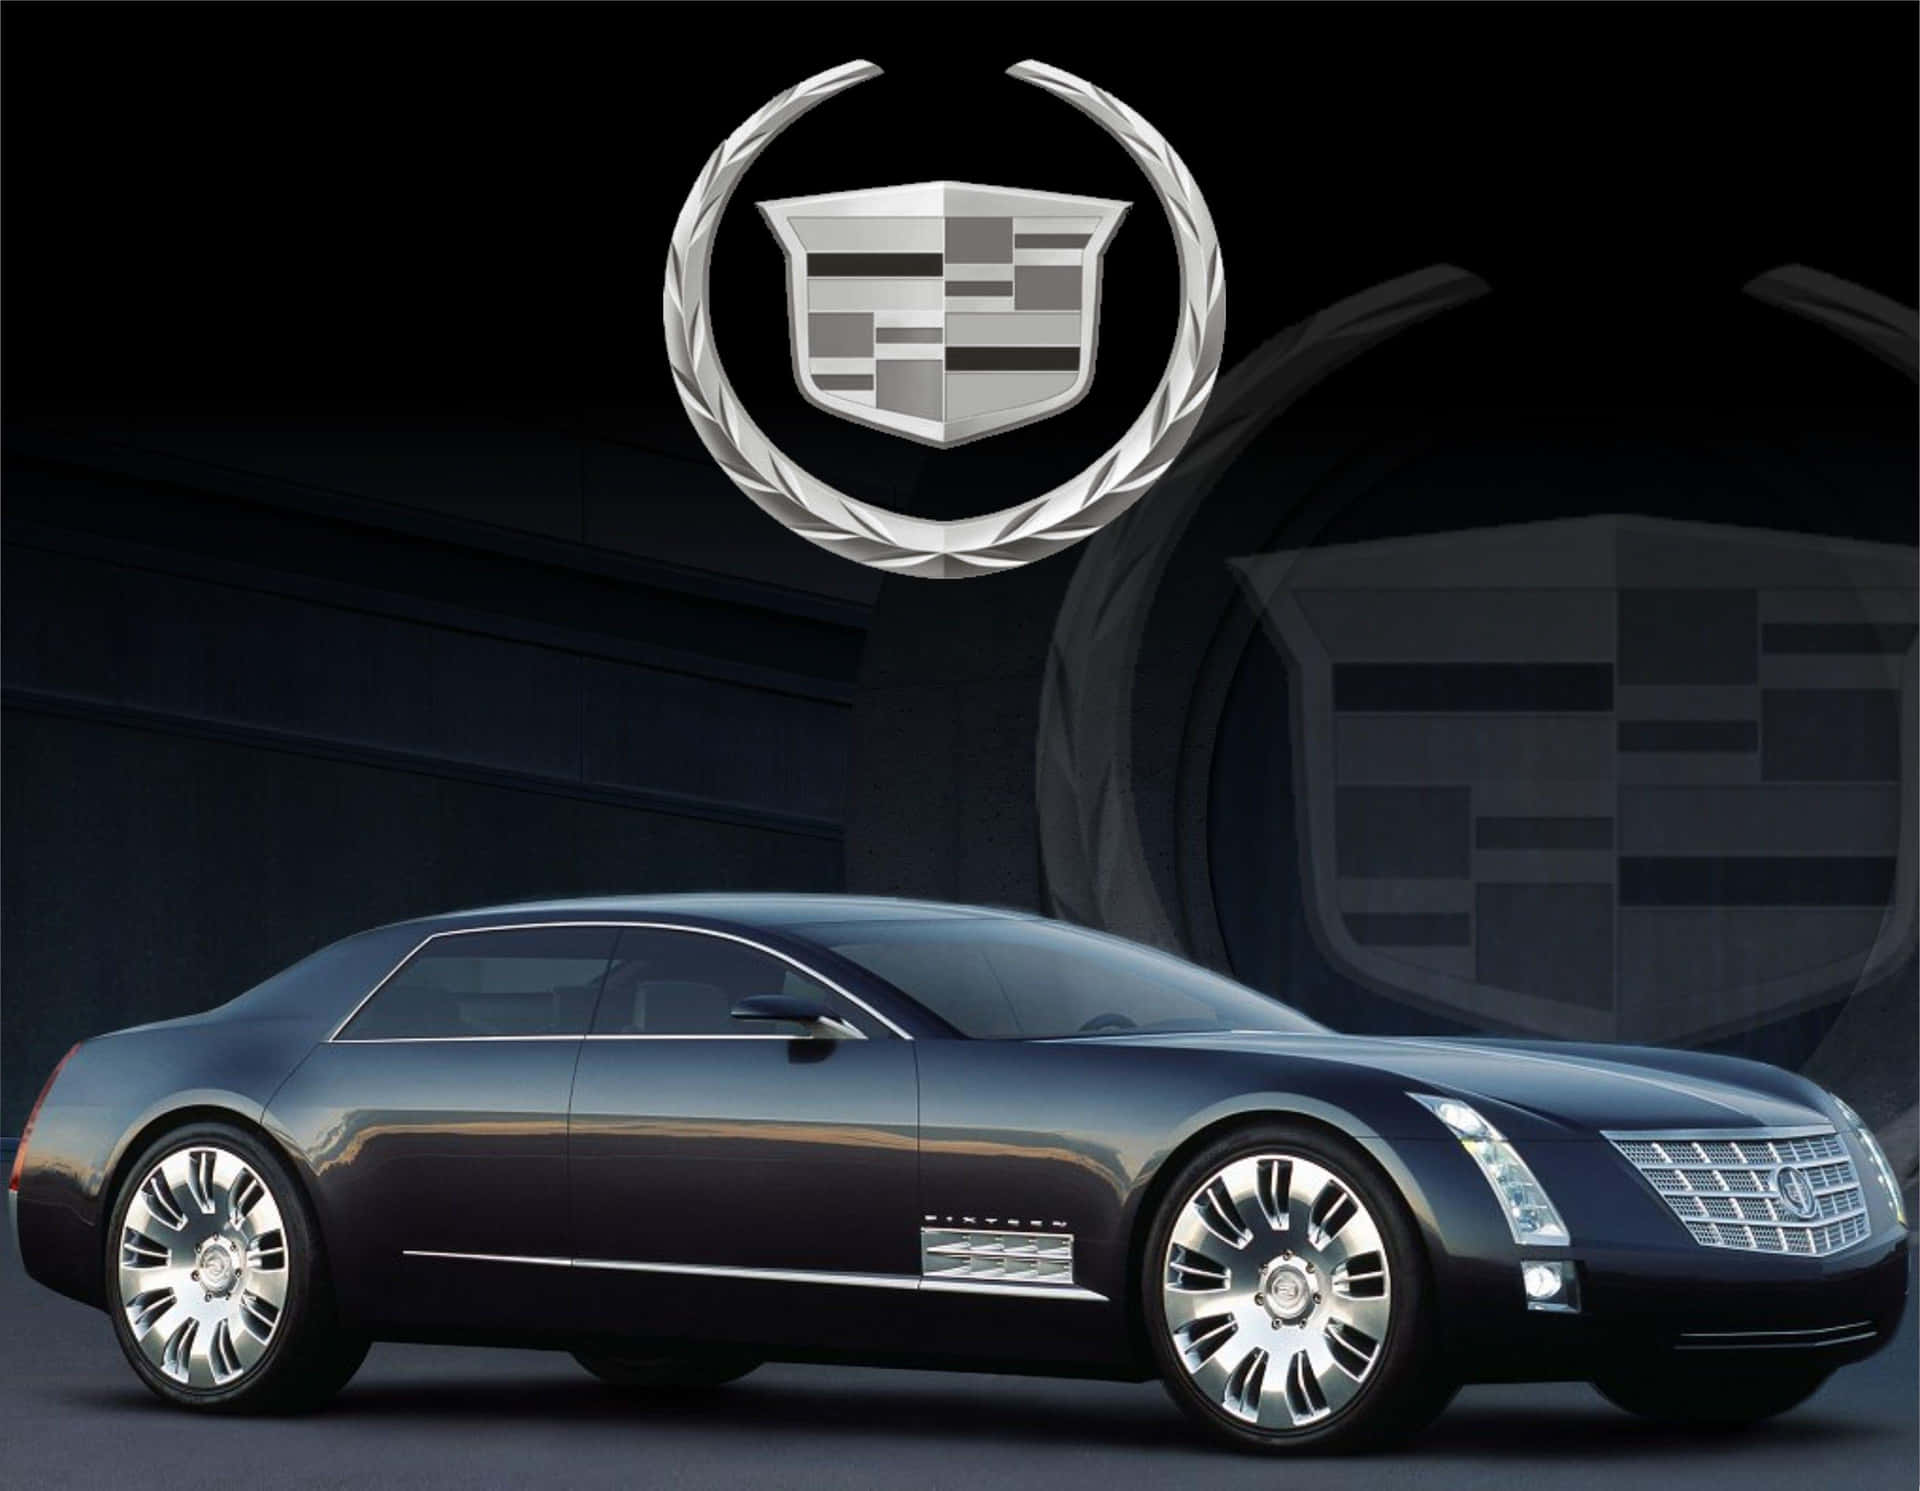 Eksklusiv,ikonisk Og Luksuriøs - Den Forførende Cadillac.